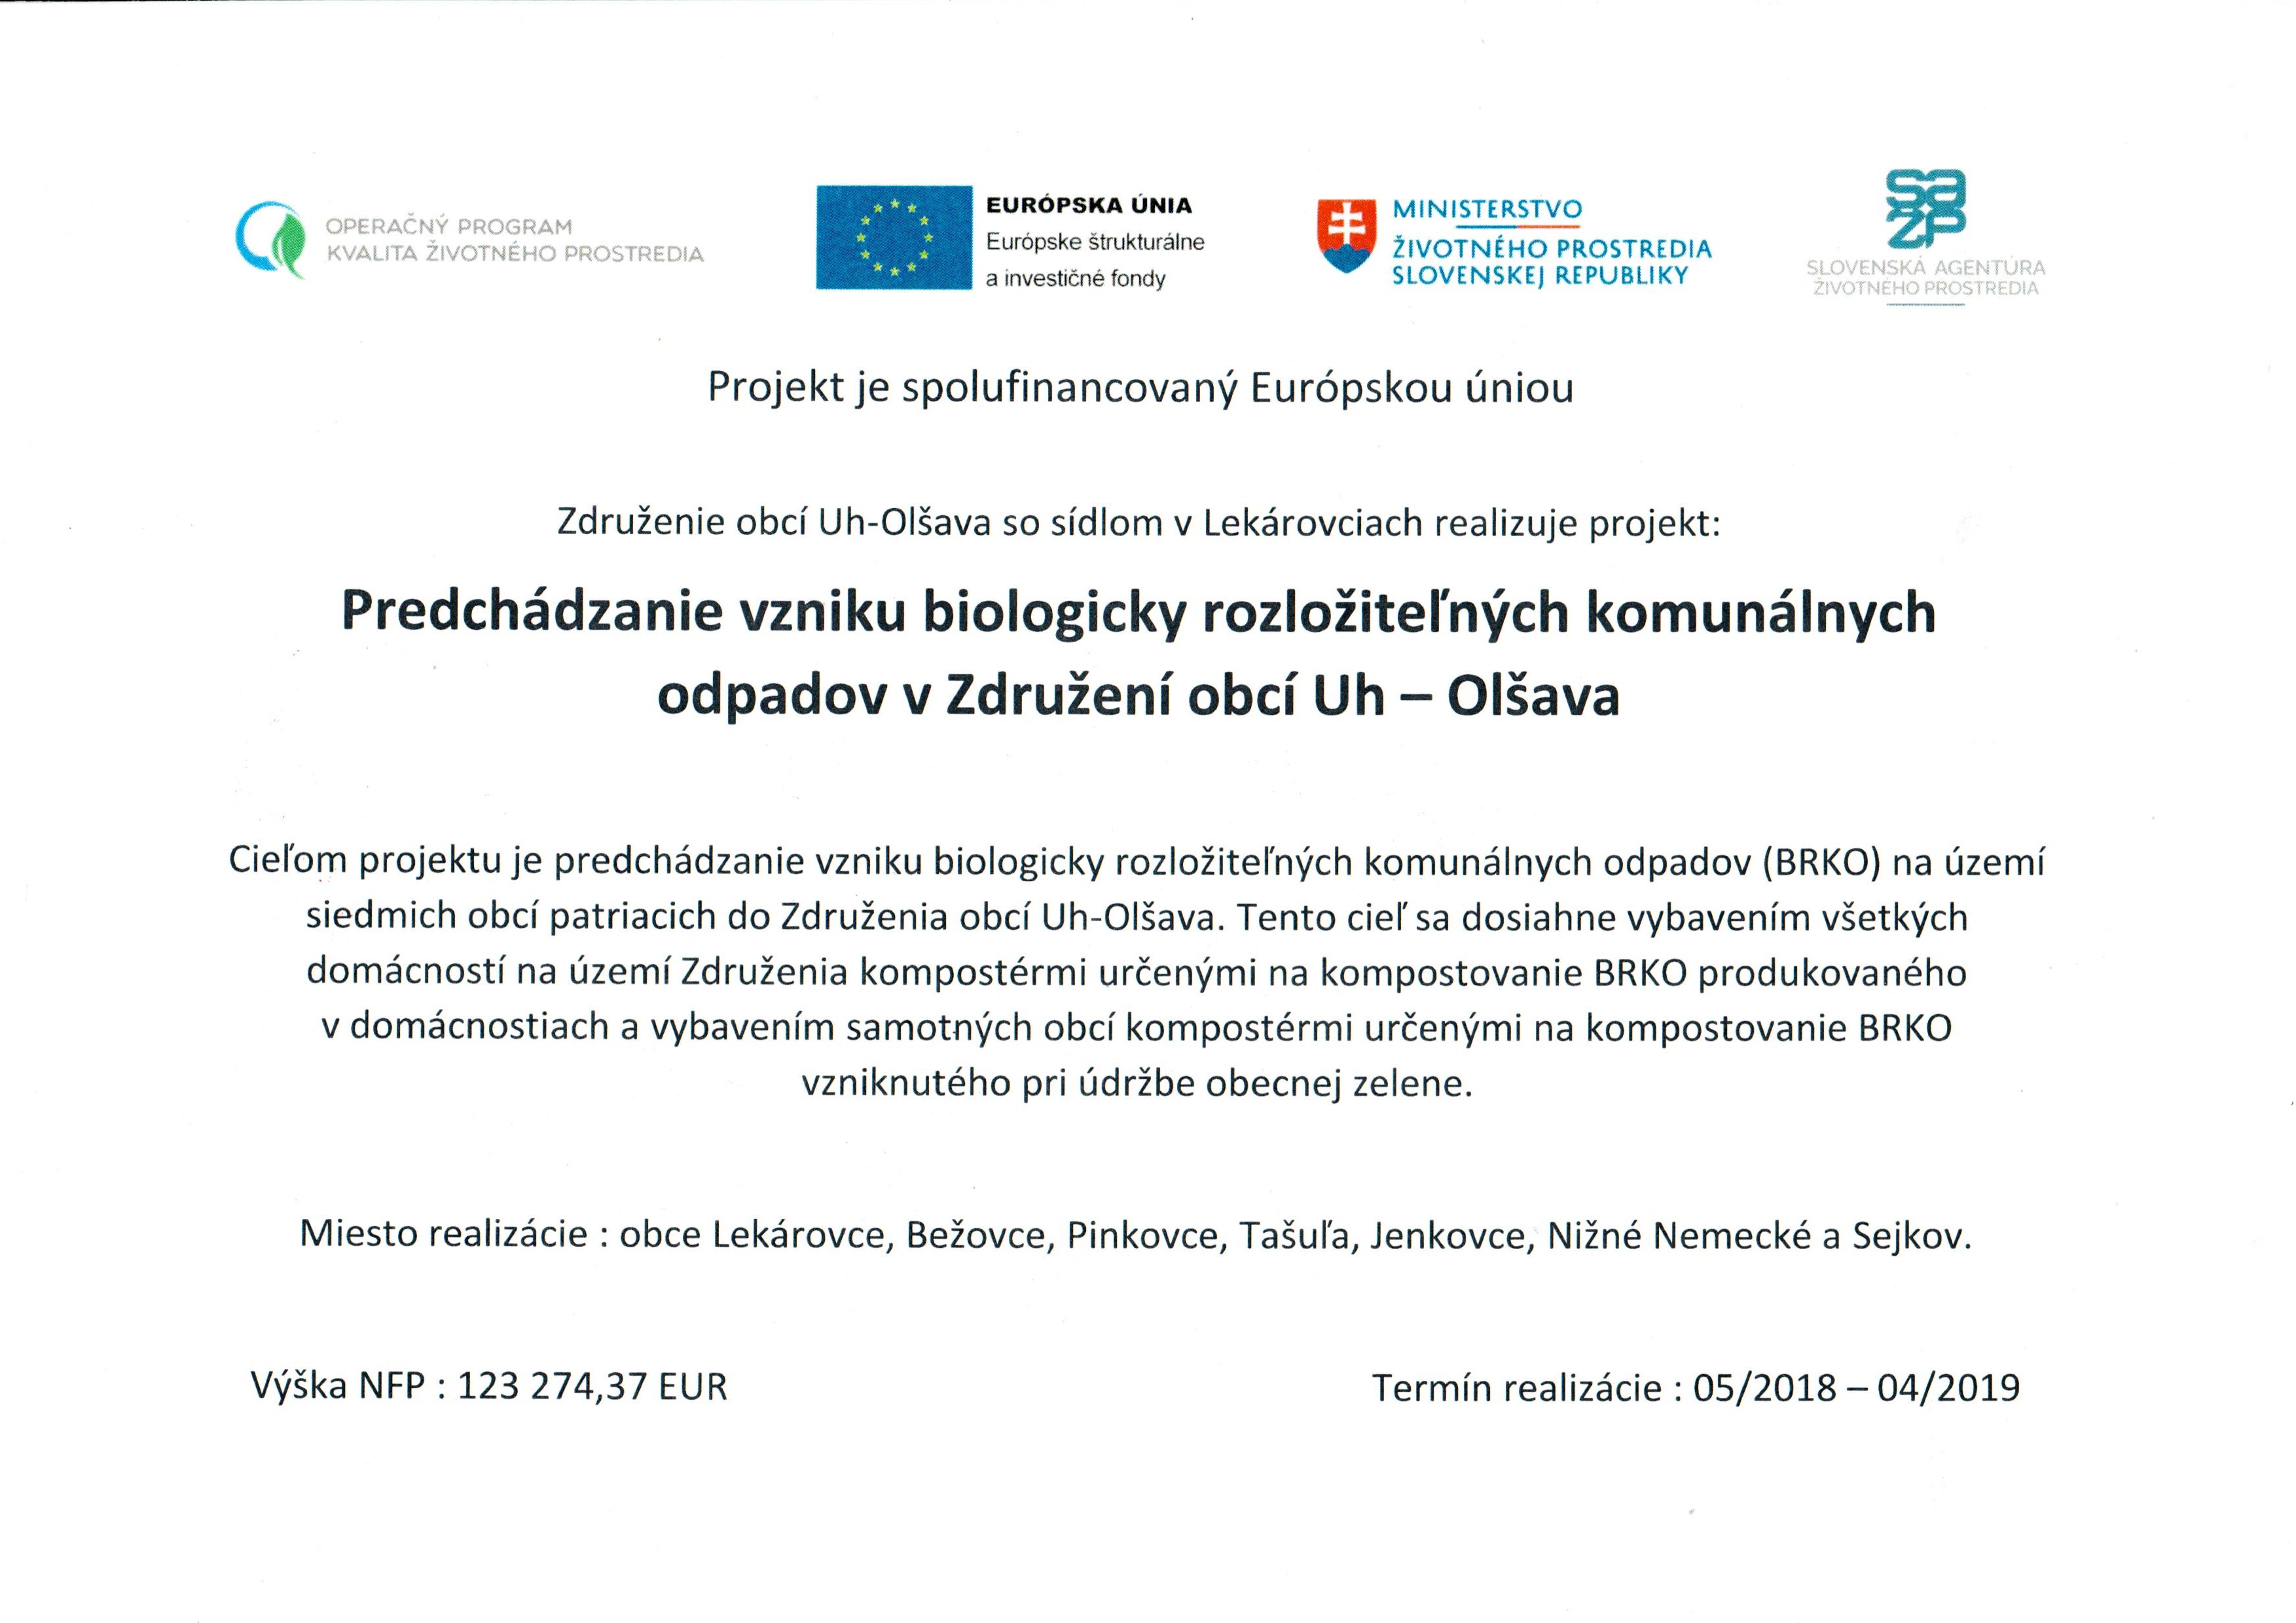 Projekt:  Predchádzanie vzniku biologicky rozložiteľných komunálnych odpadov v Združení obcí Uh-Olšava